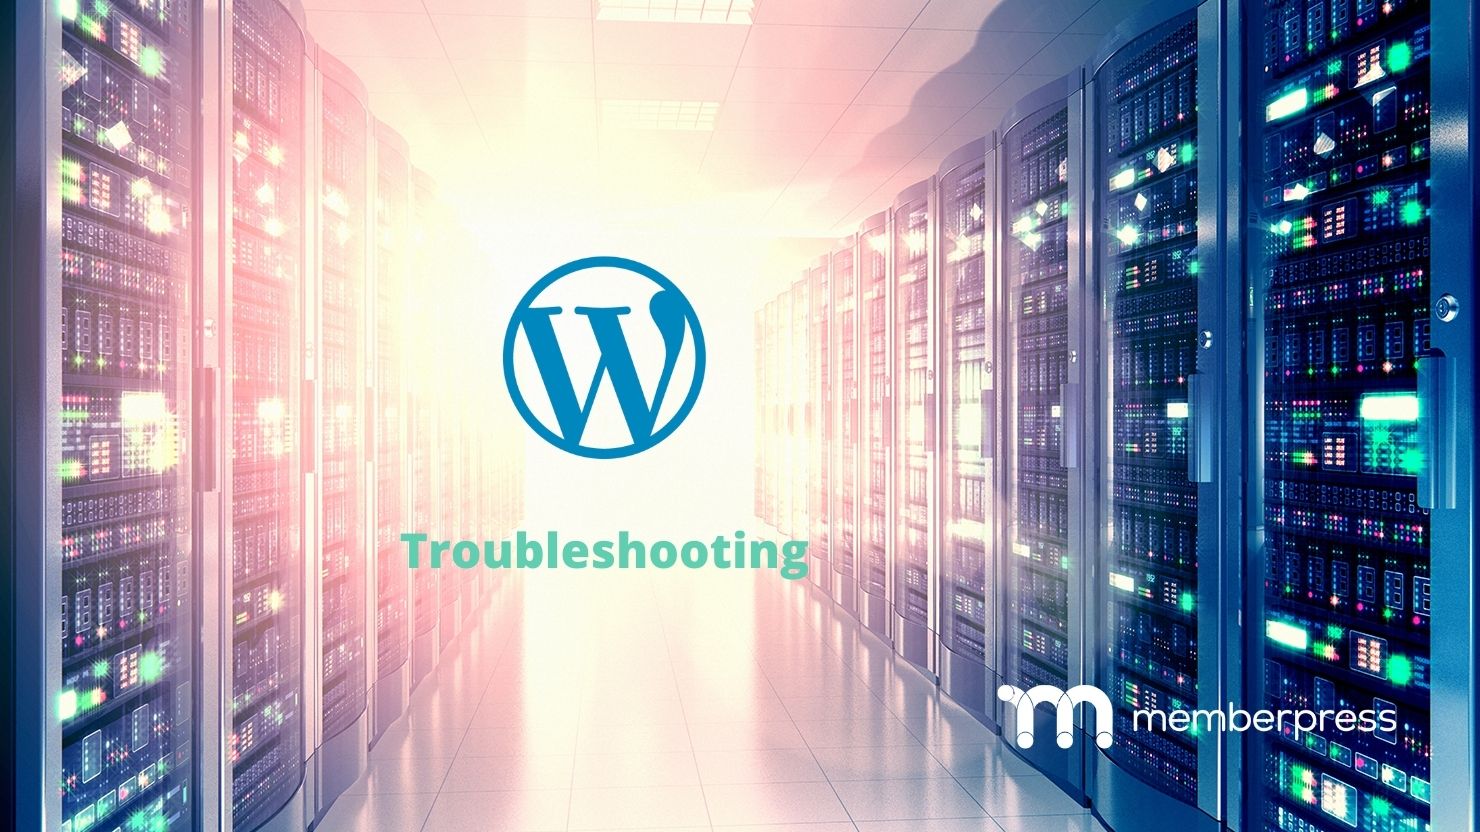 WordPress troubleshooting image